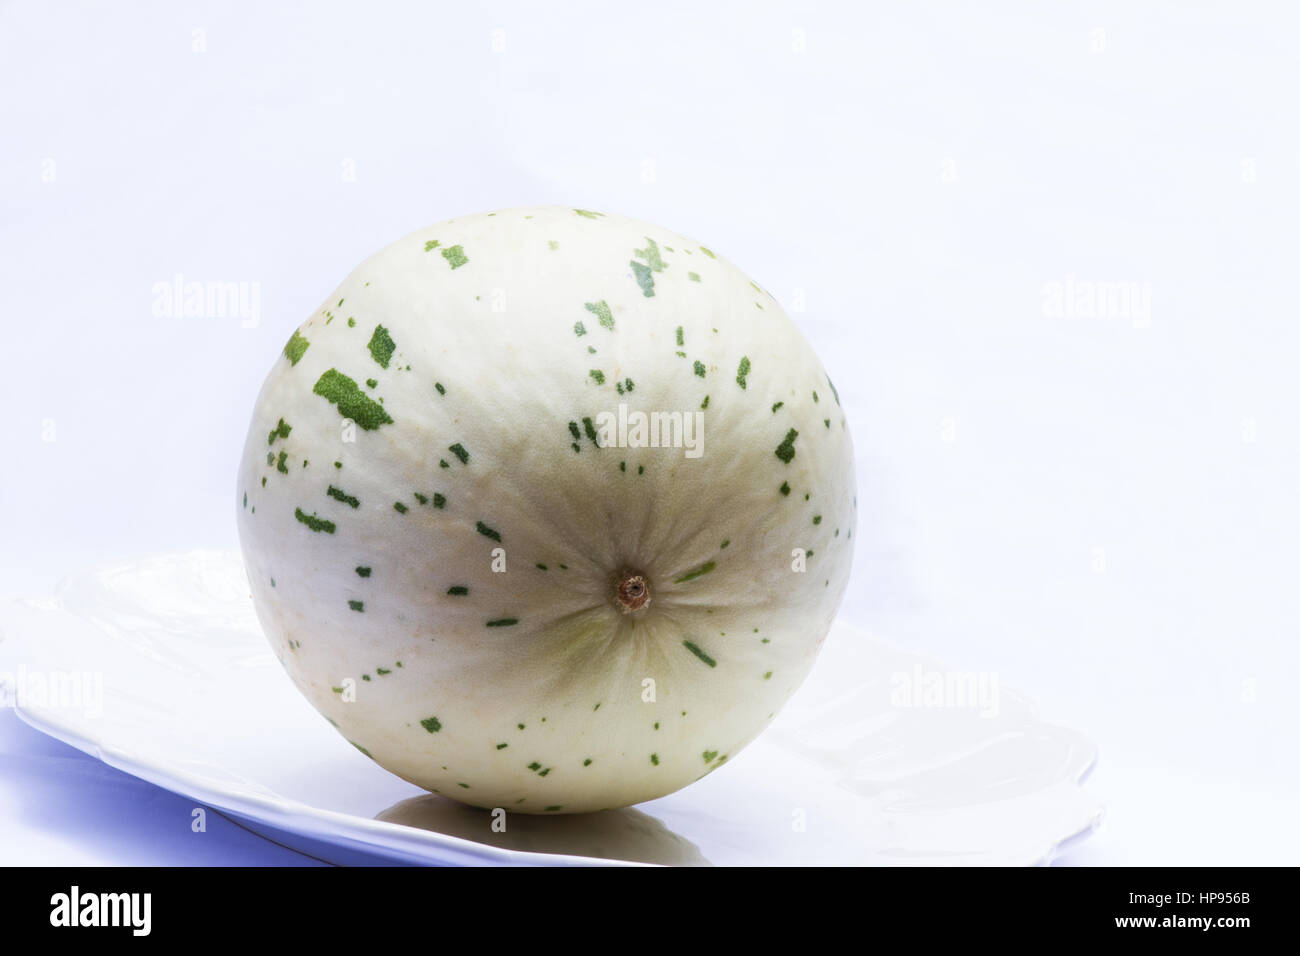 Melon on white background Stock Photo